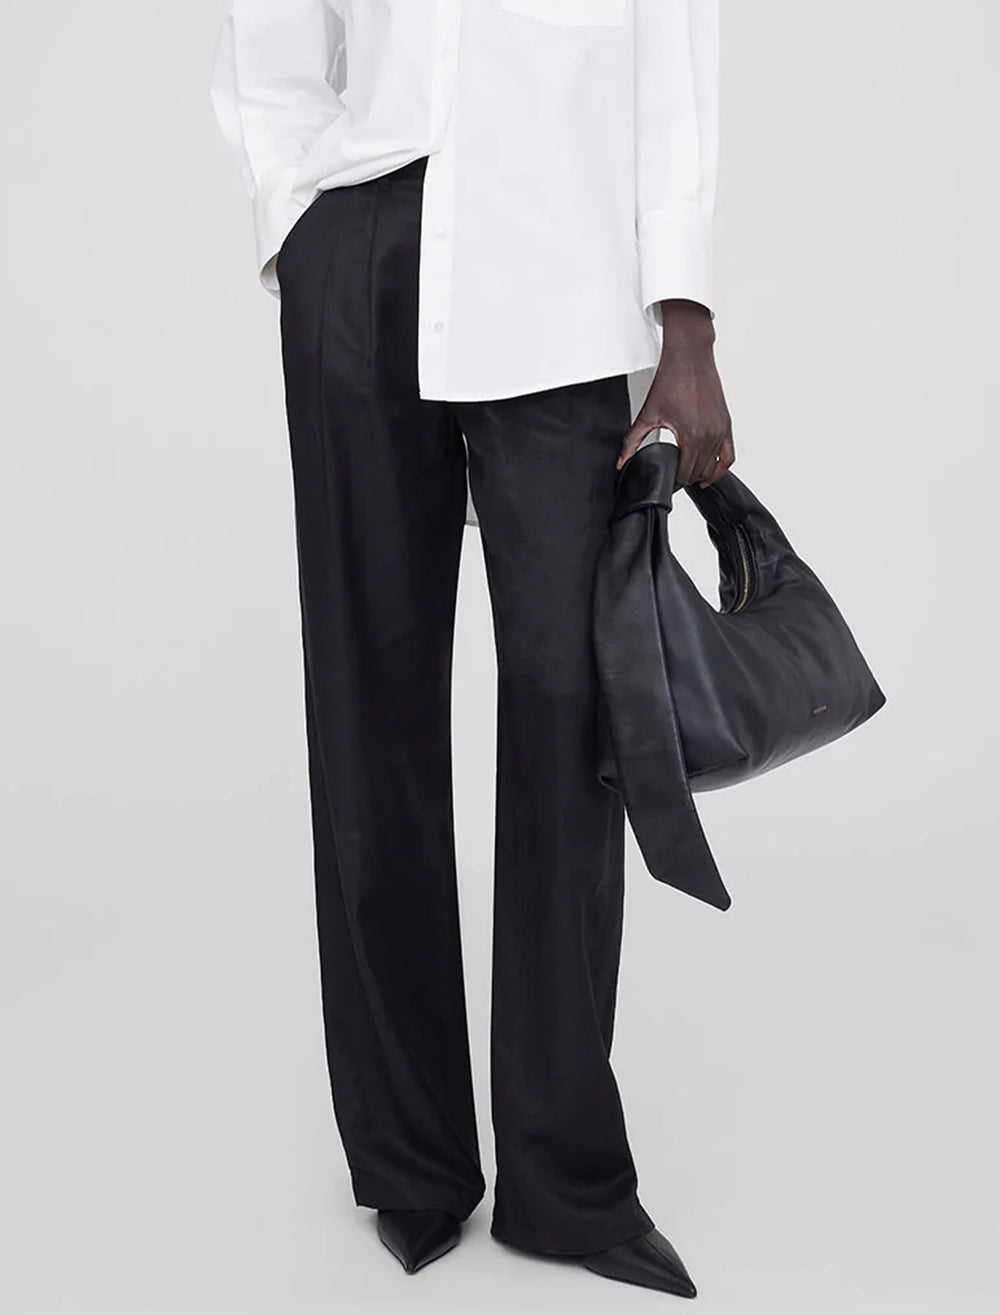 Model holding Anine Bing's grace bag in black.